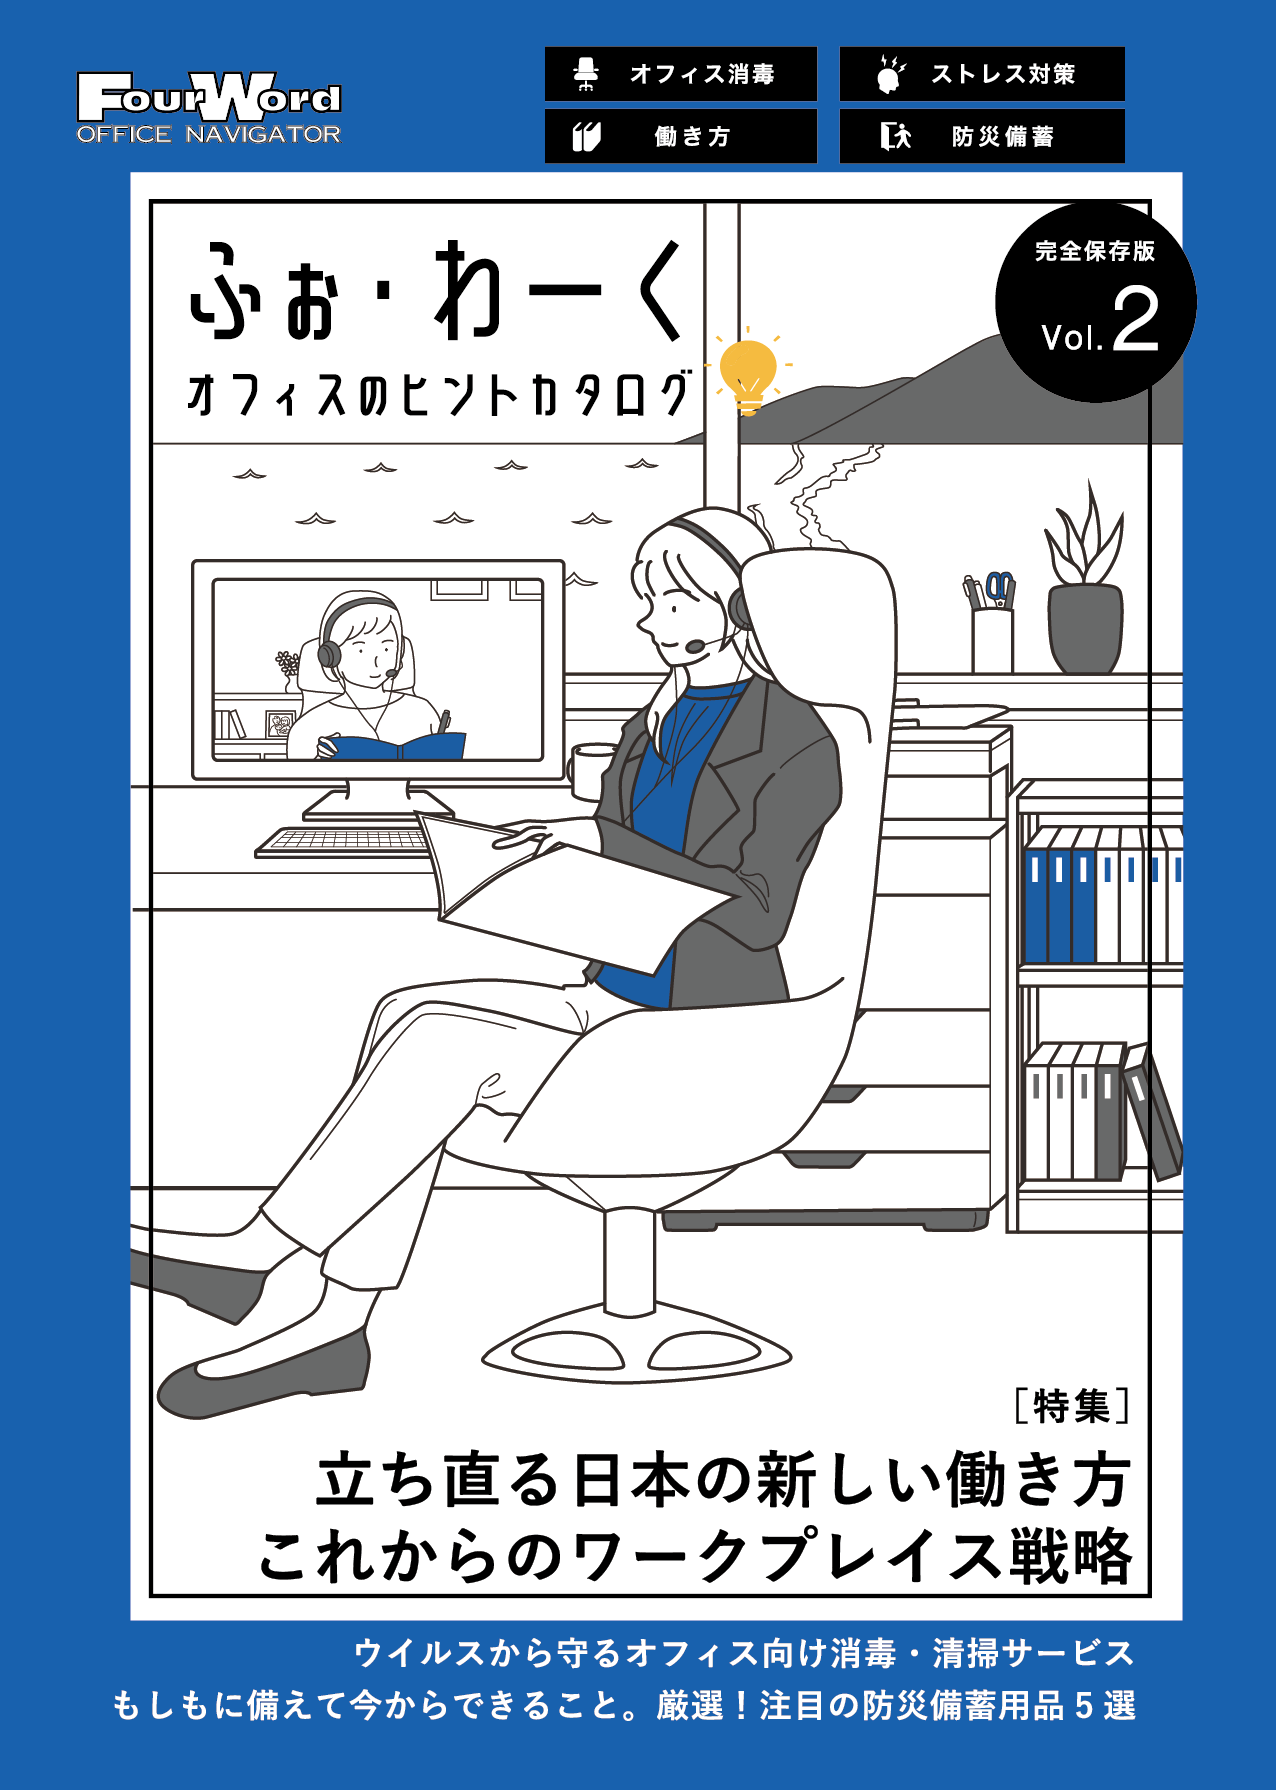 オフィスのヒントカタログ「ふぉ・わーく」Vol.2号